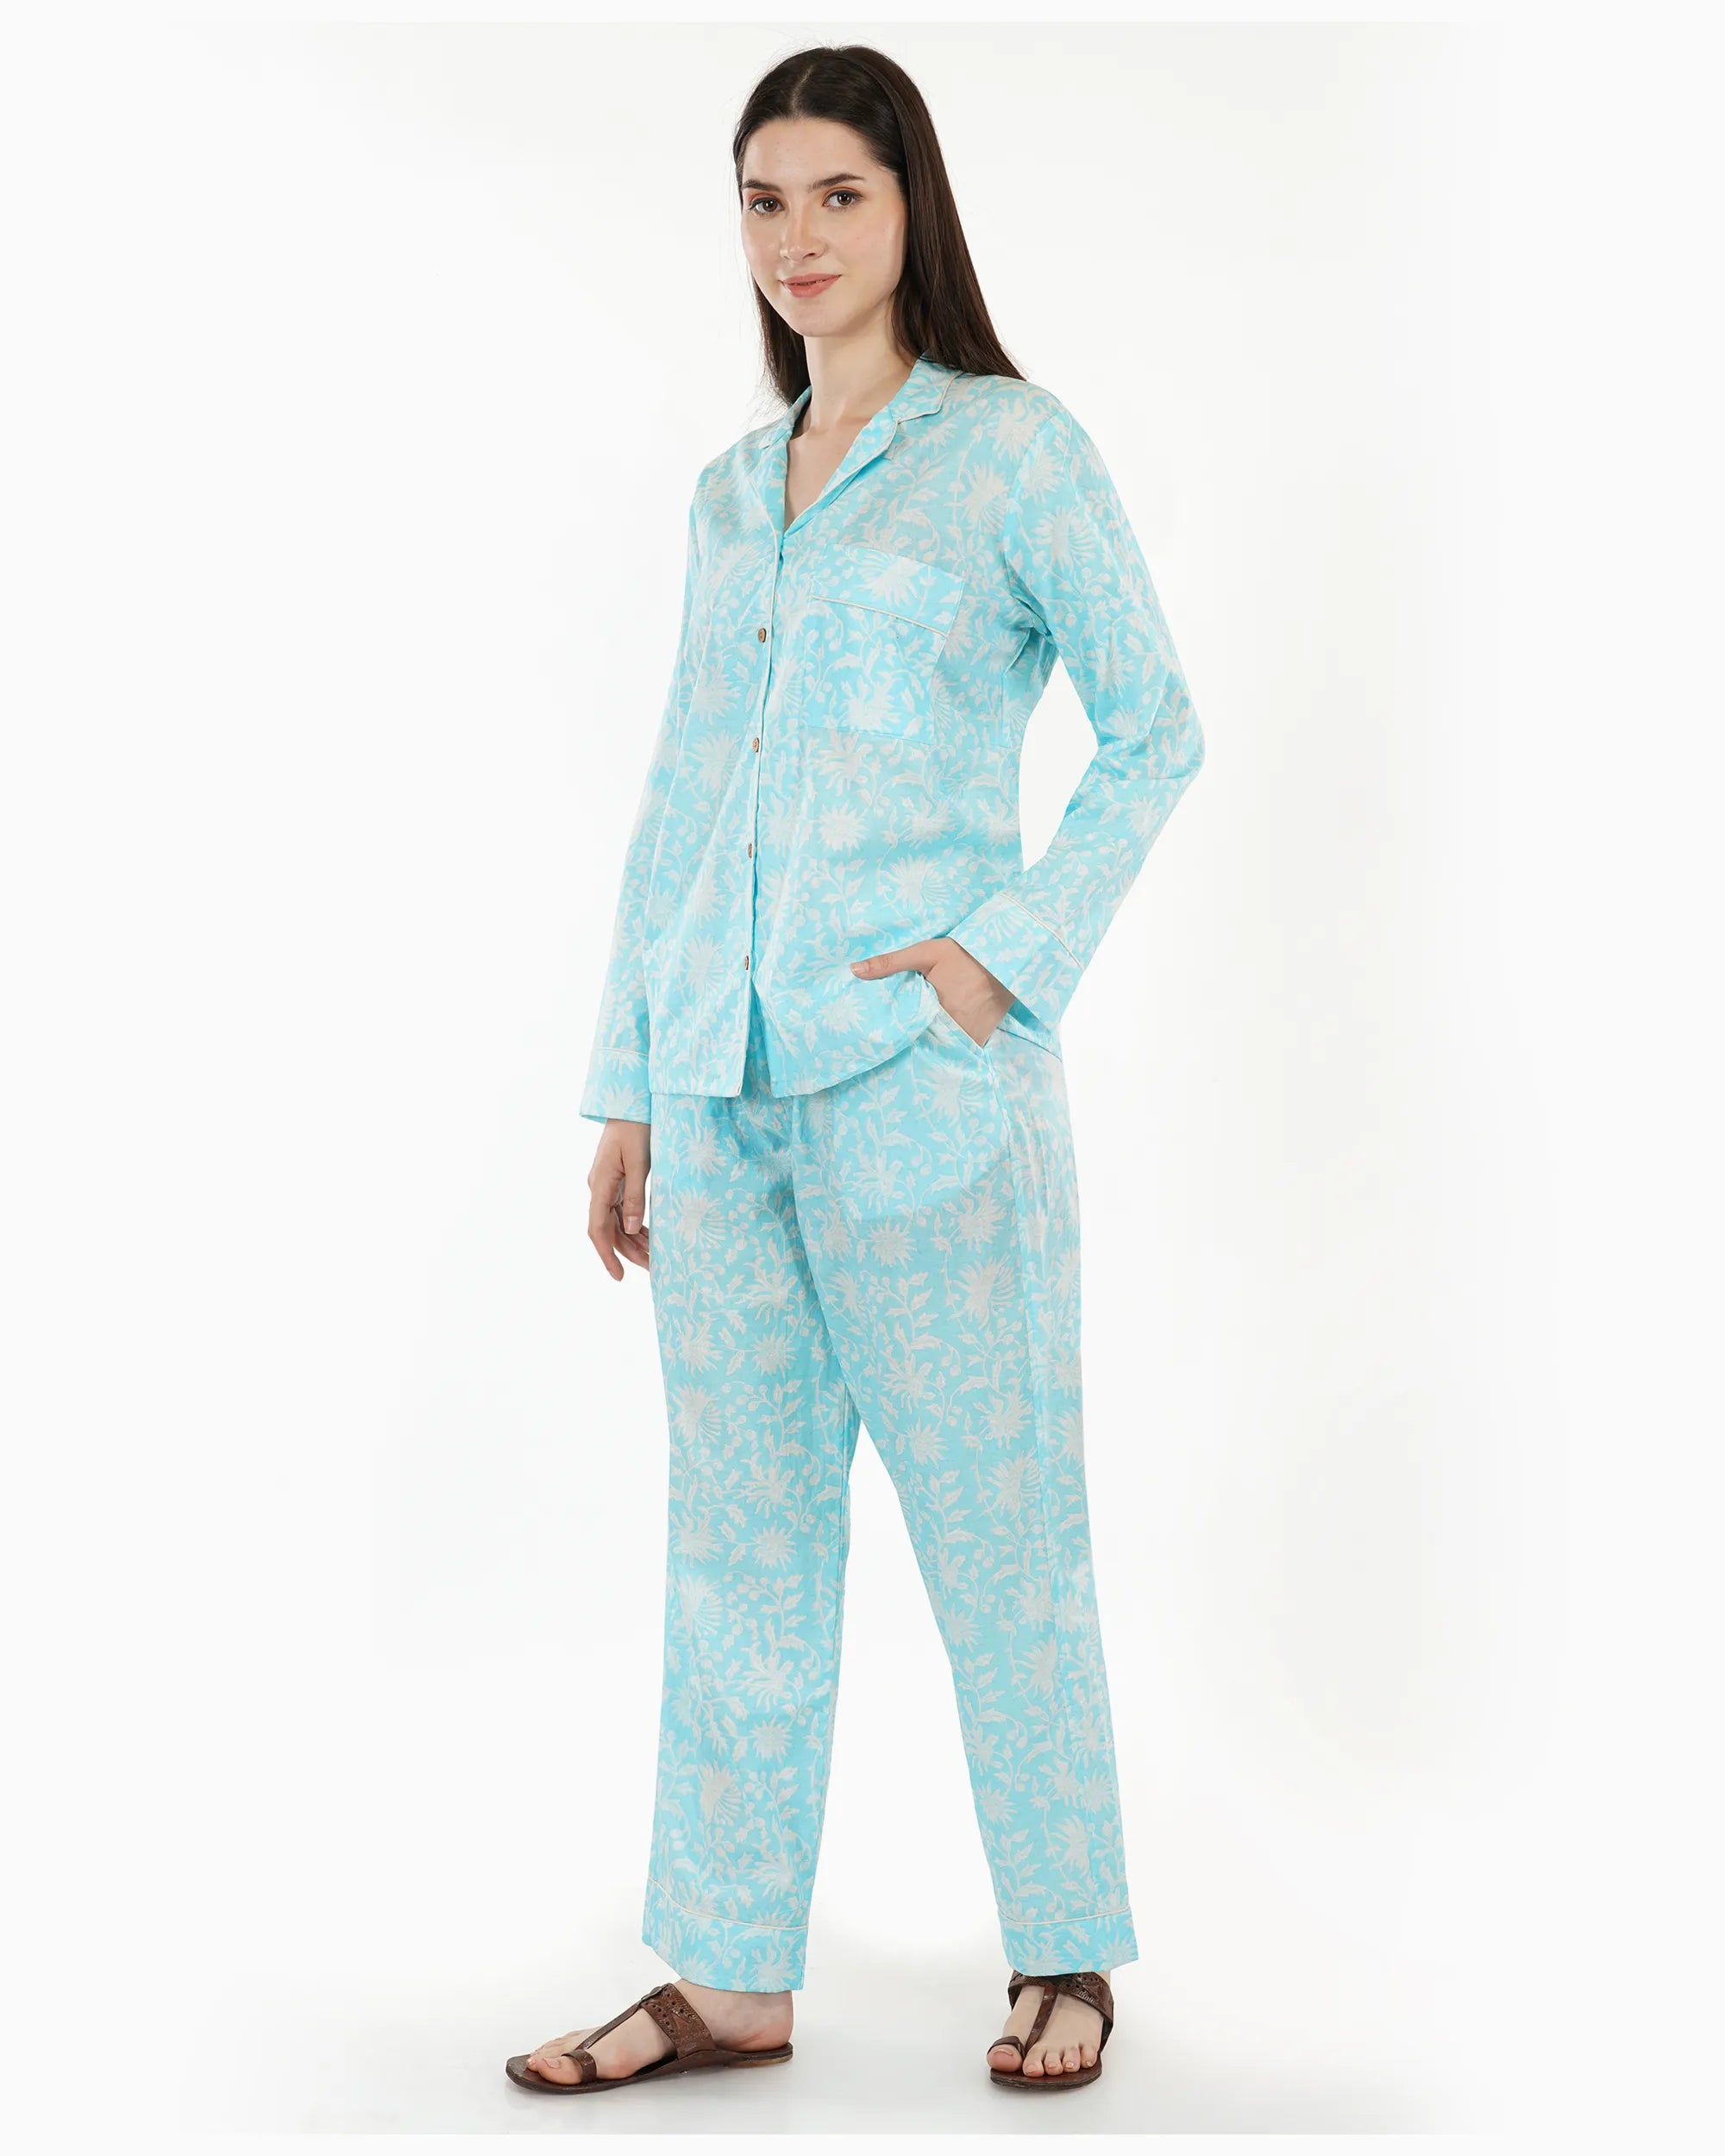 Watercolor Pajamas